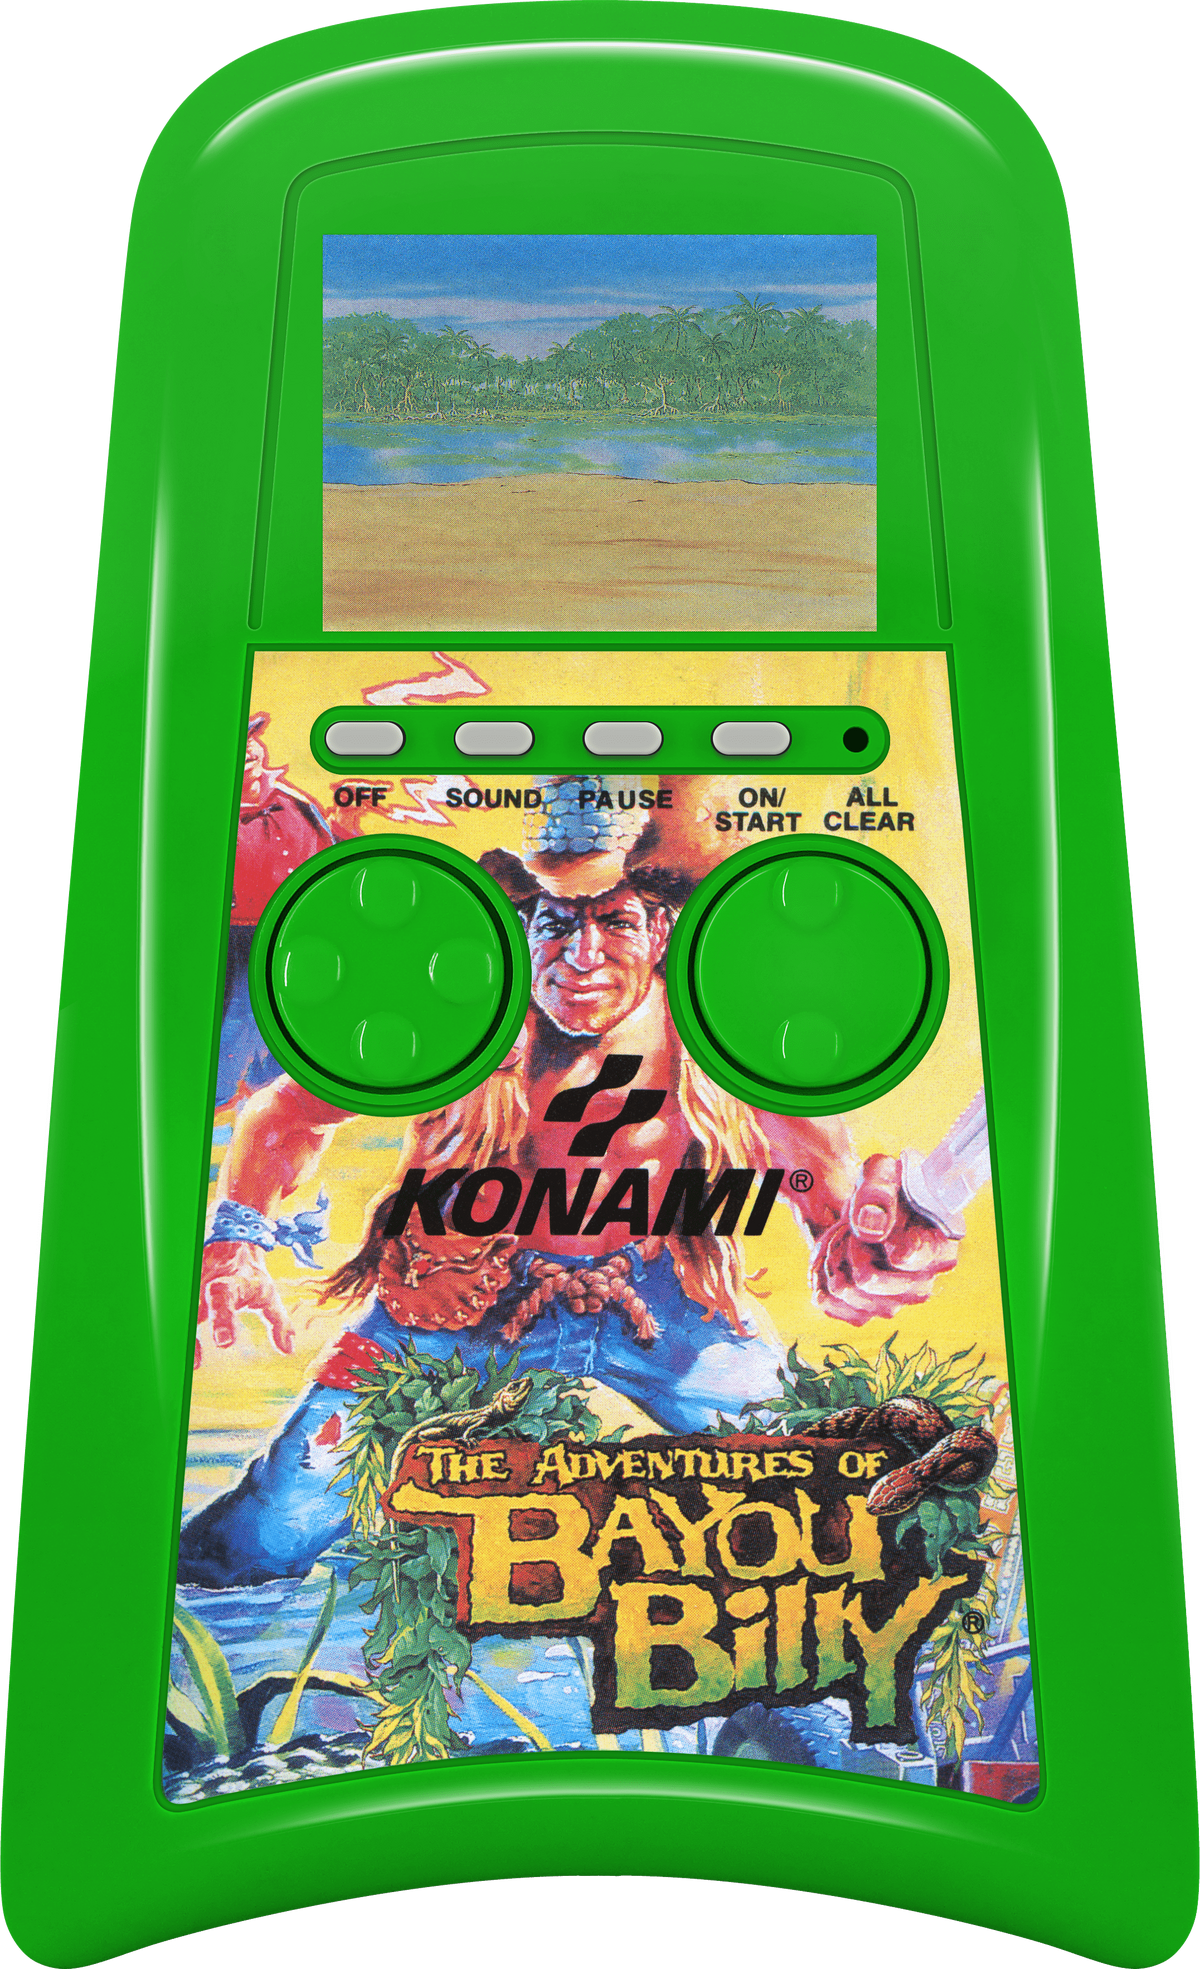 The Adventures of Bayou Billy (LCD game) | Konami Wiki | Fandom